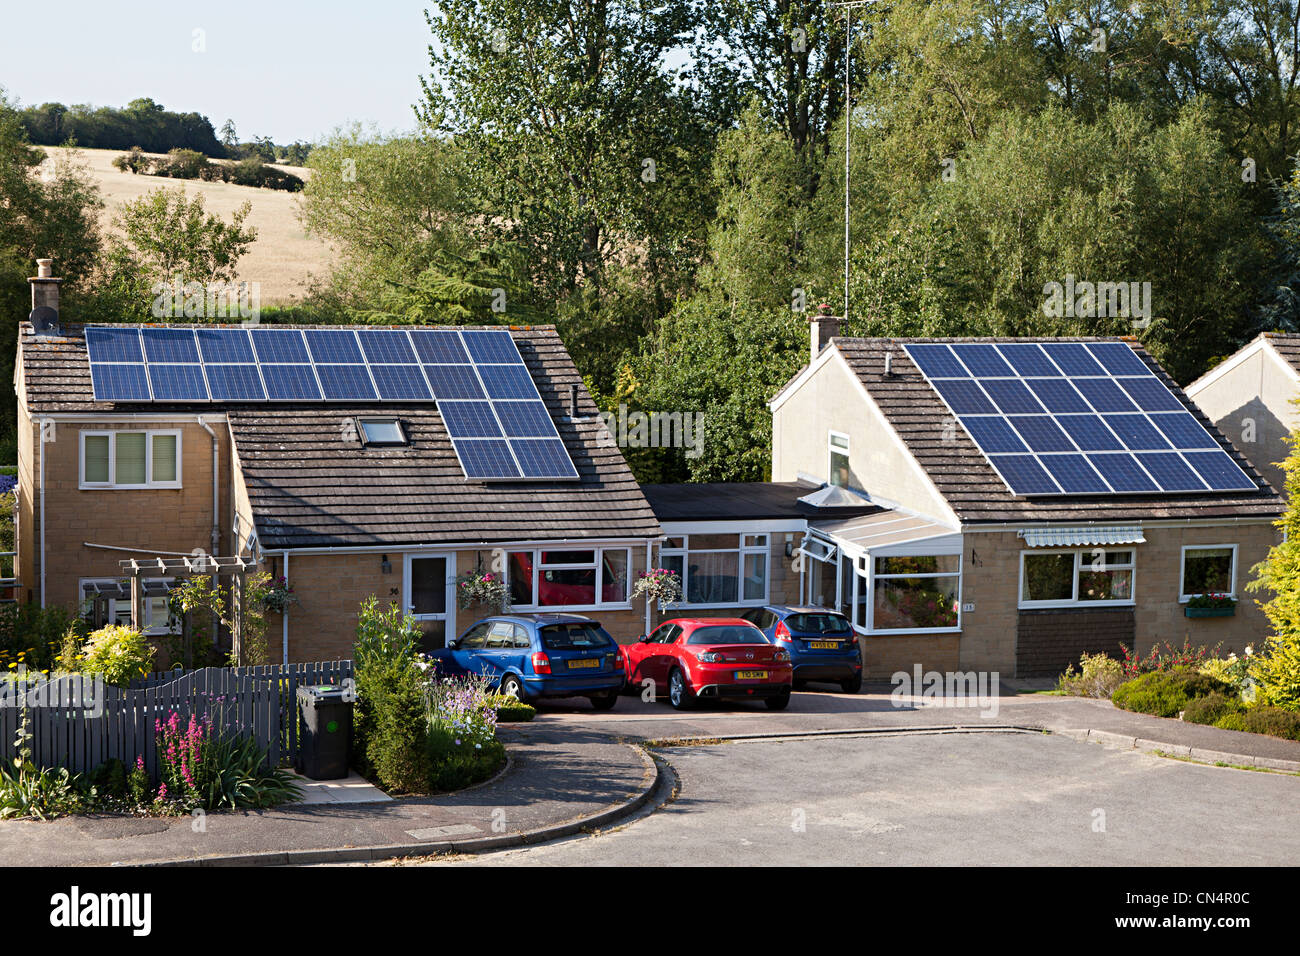 Solar panels on house roofs, Woodstock, Oxfordshire, UK Stock Photo